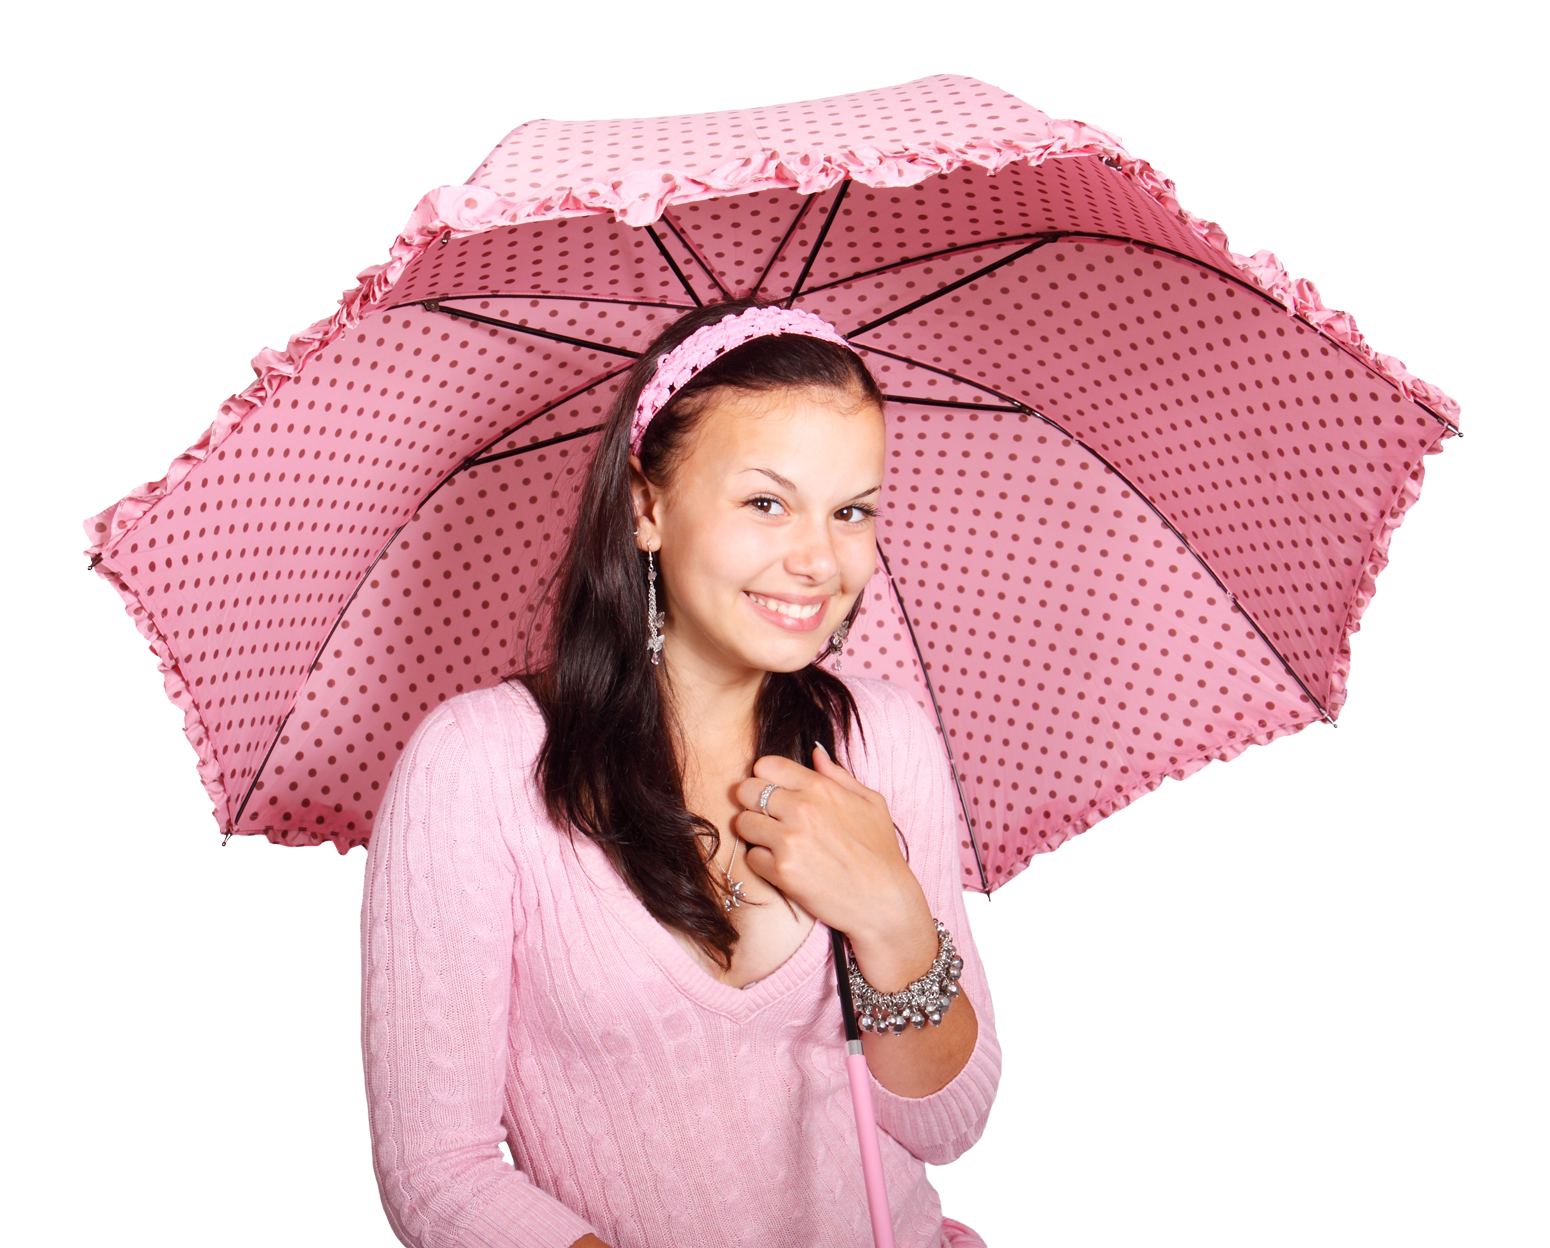 Smiling Girlwith Pink Umbrella PNG image